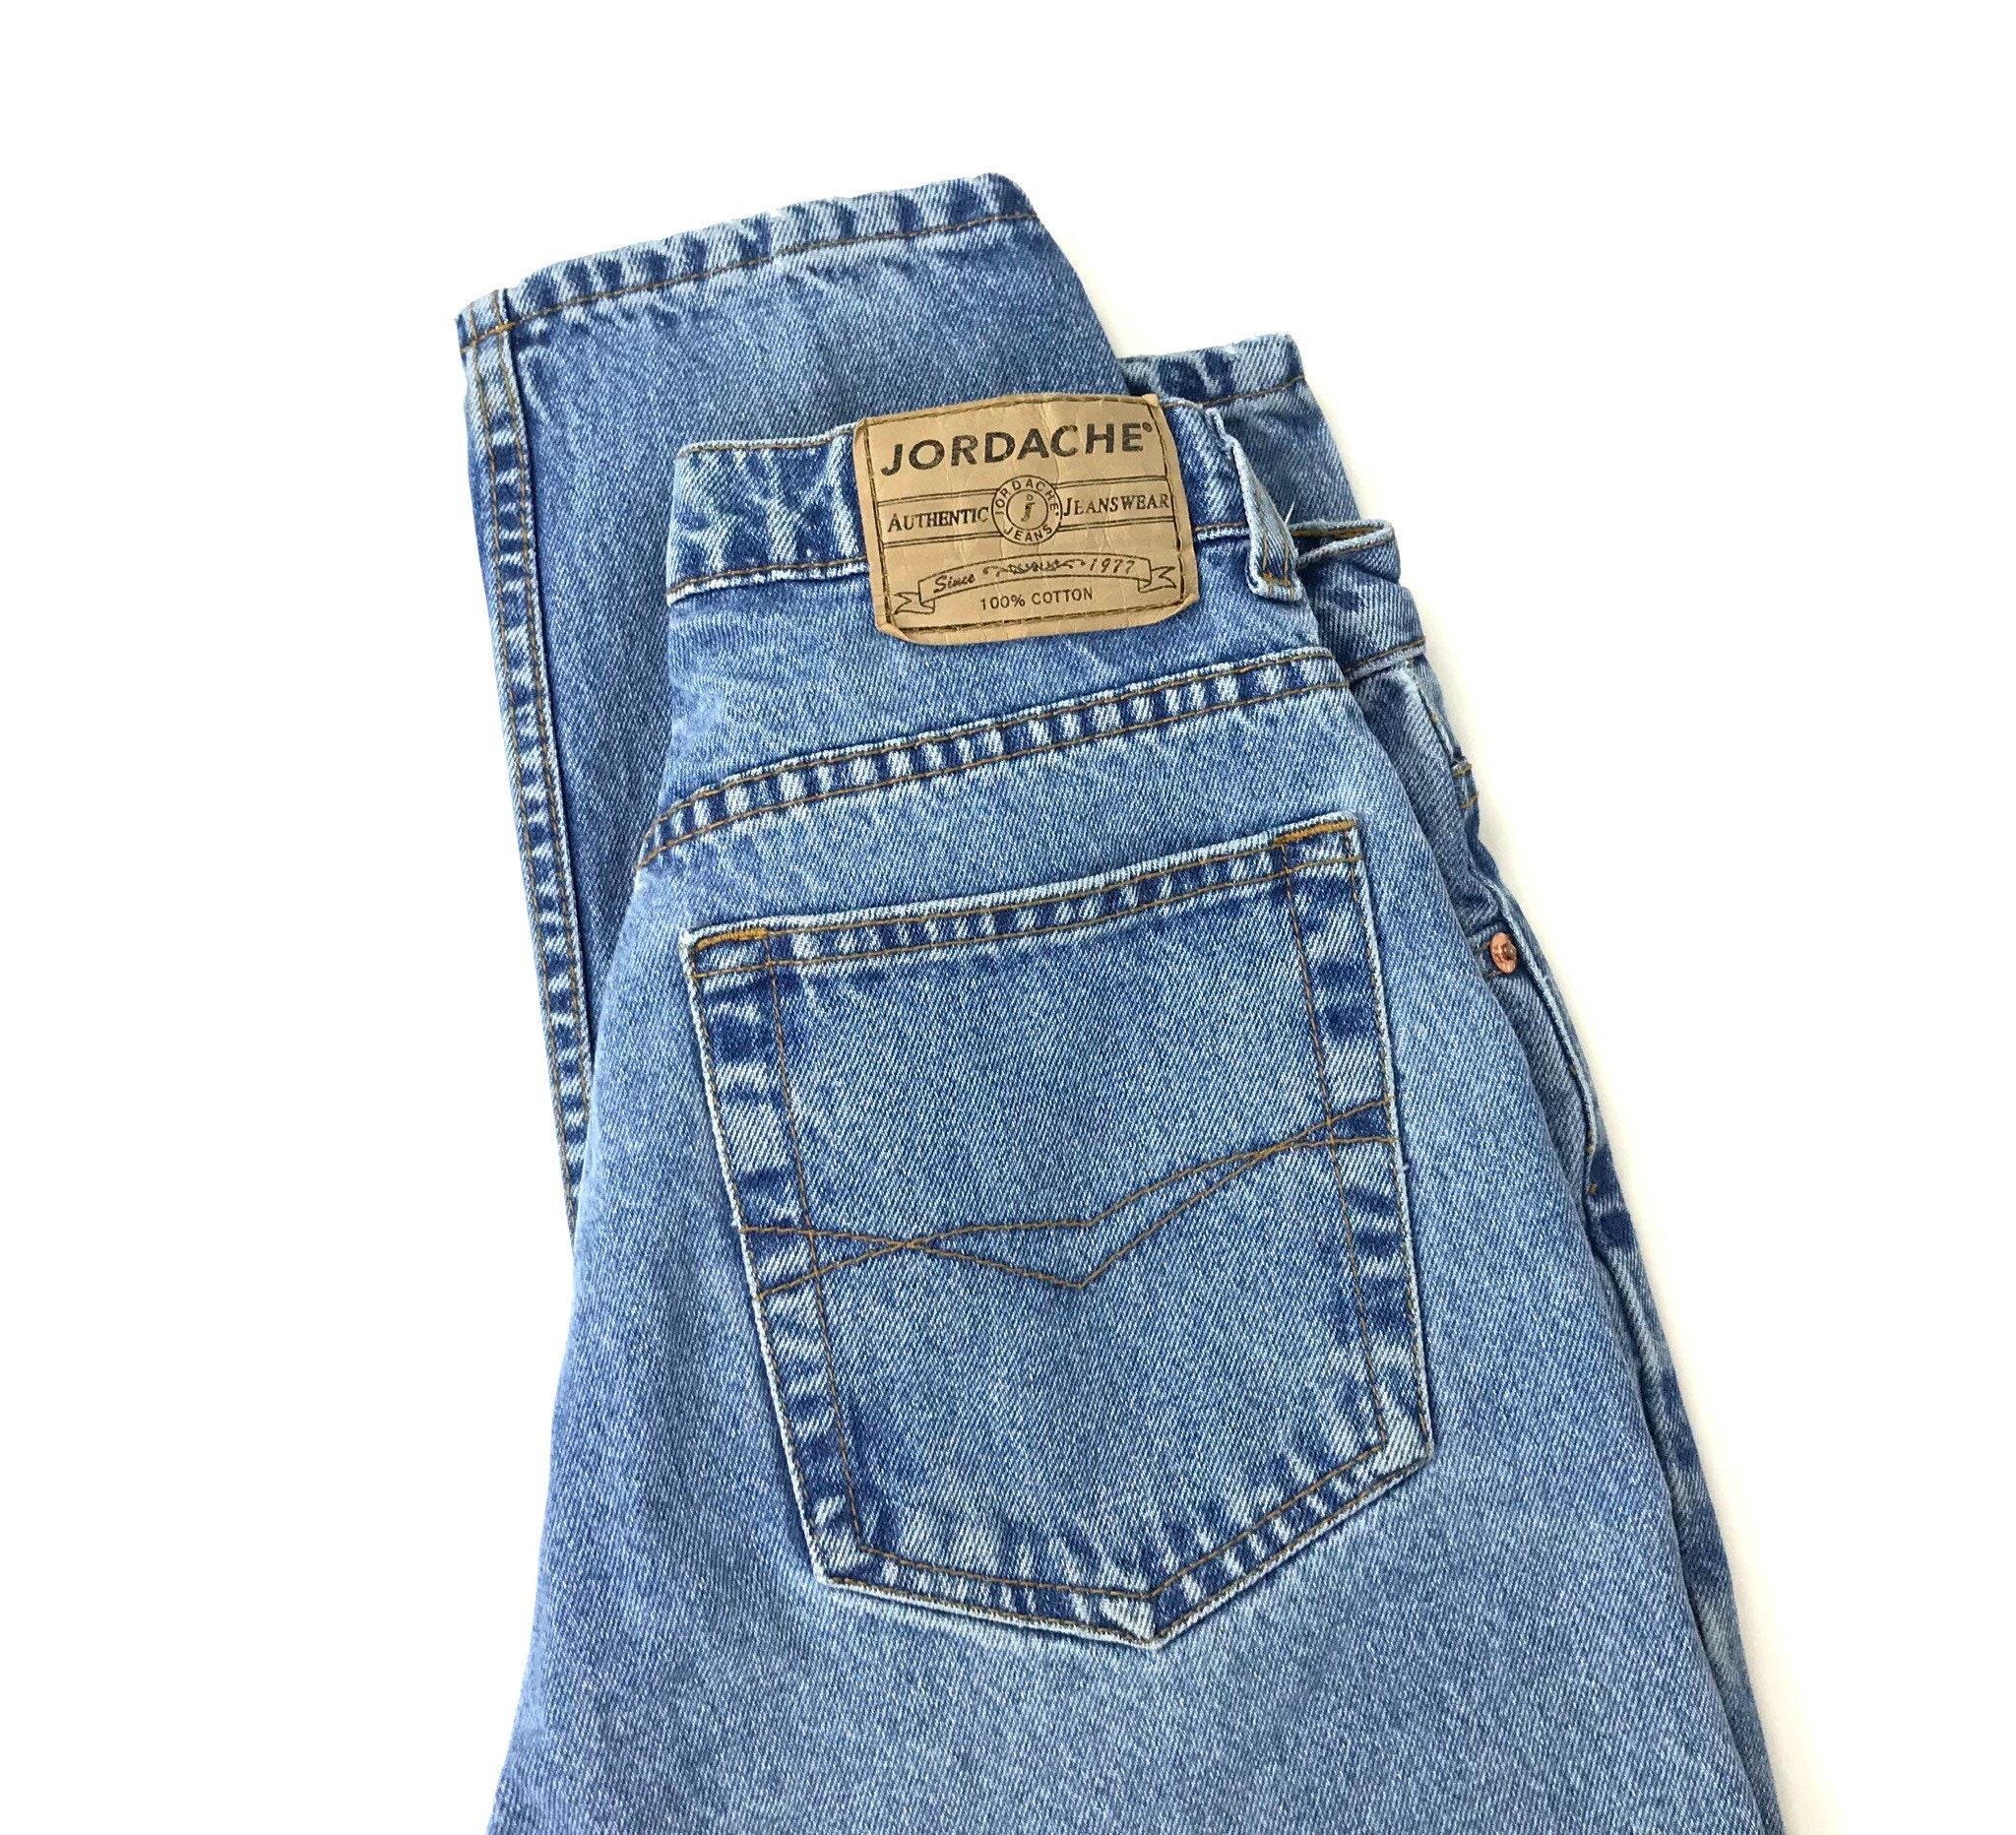 Jordache 90's Vintage Jeans / Size 27 28